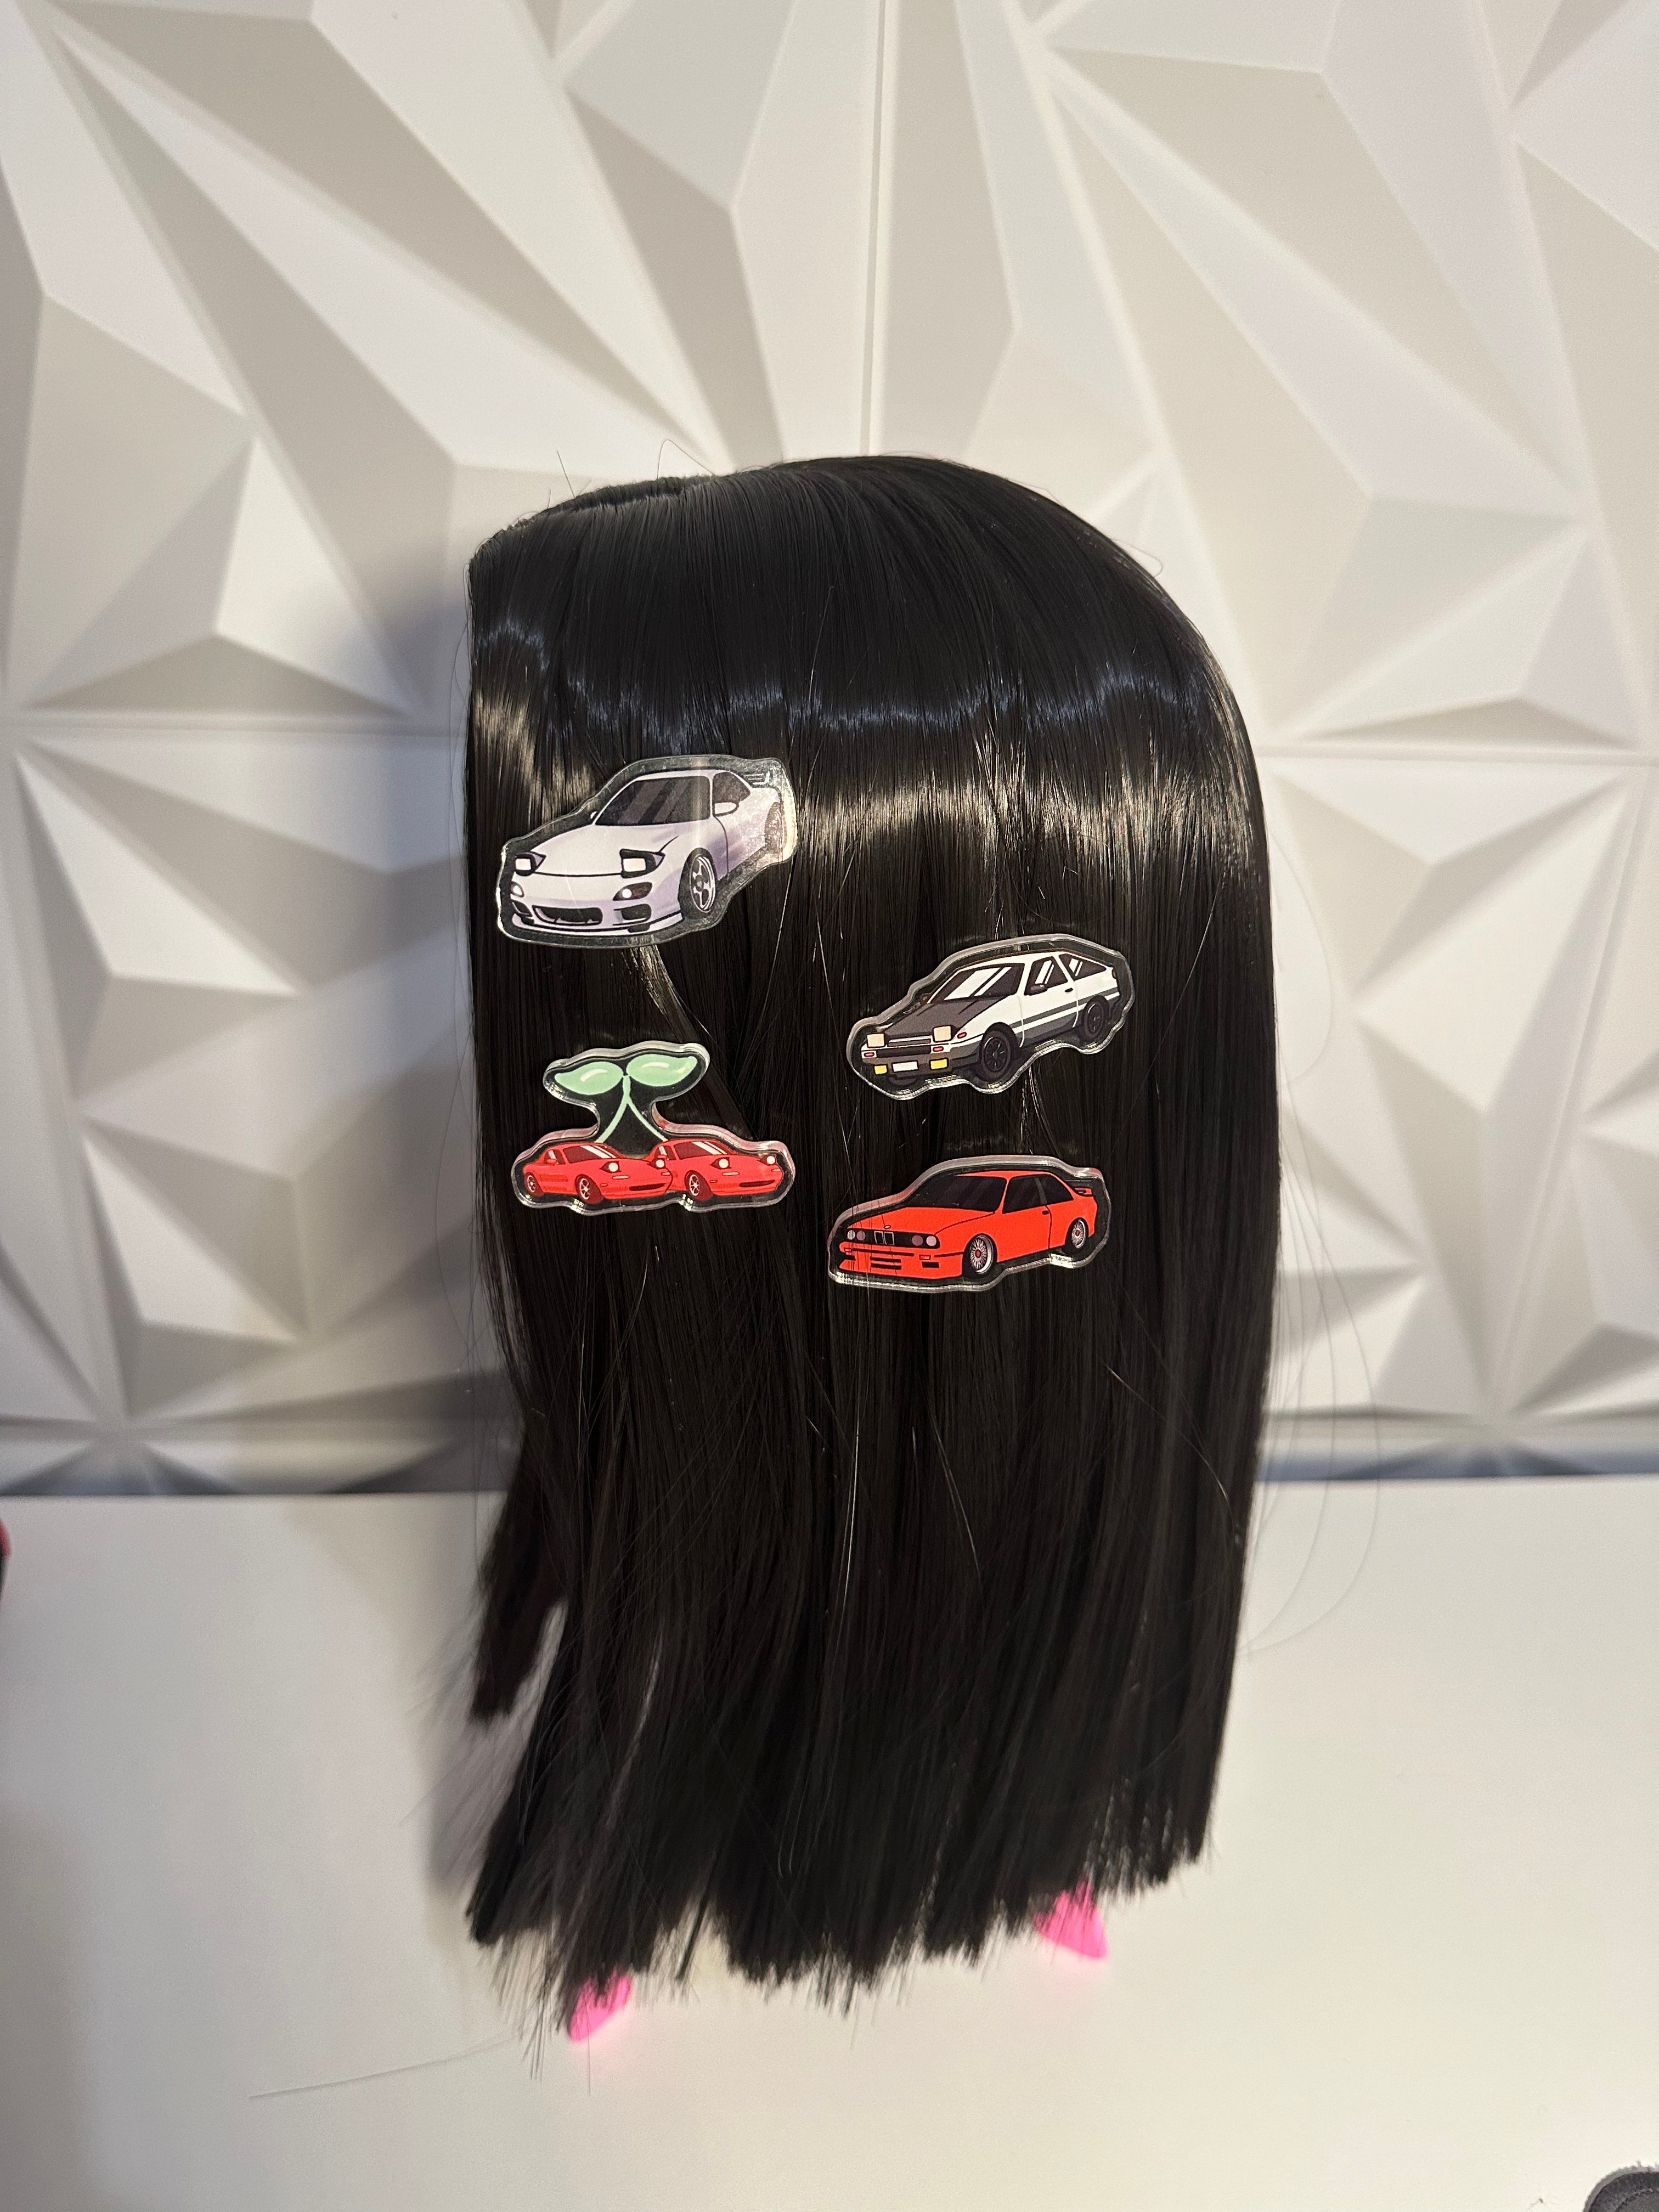 AE86 Hair Clips